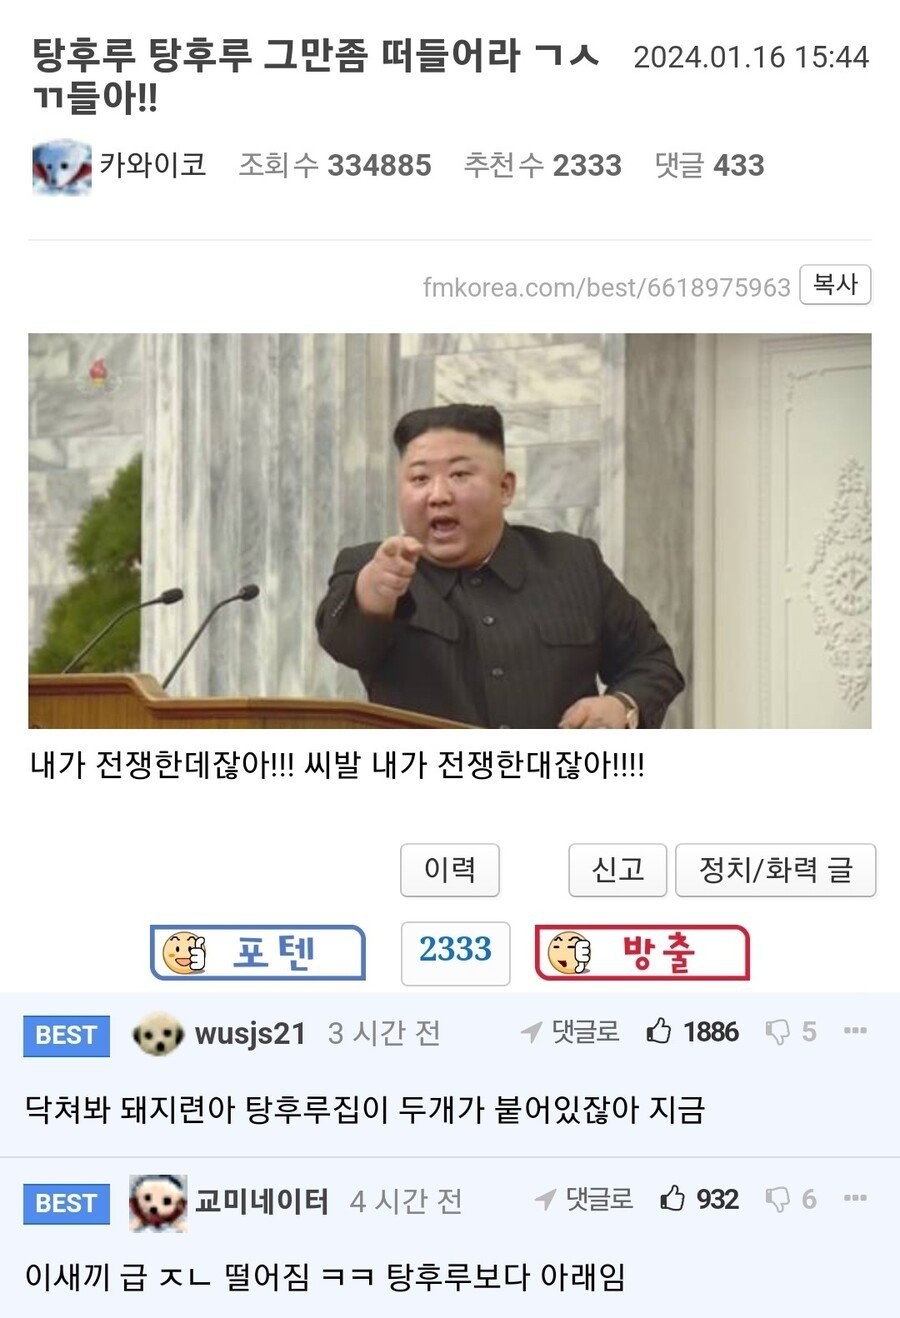 김정은이 탕후루탕후루 이기는 방법 ㄹㅇ....DPRK